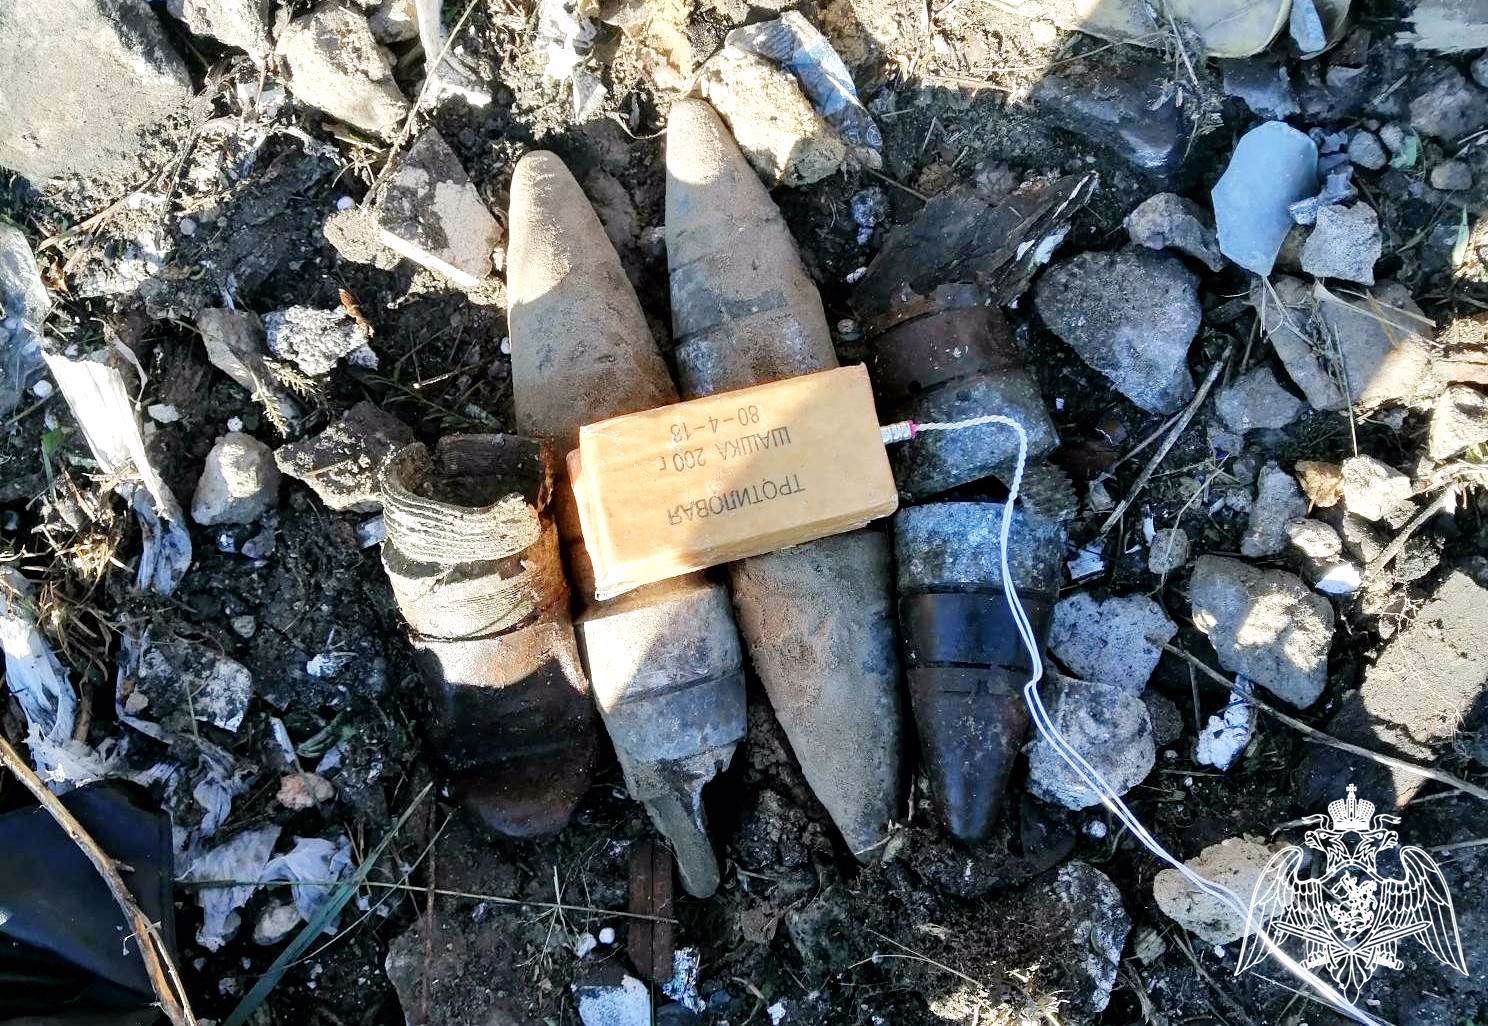 Сборщики металлолома нашли бомбы в Нижегородской области